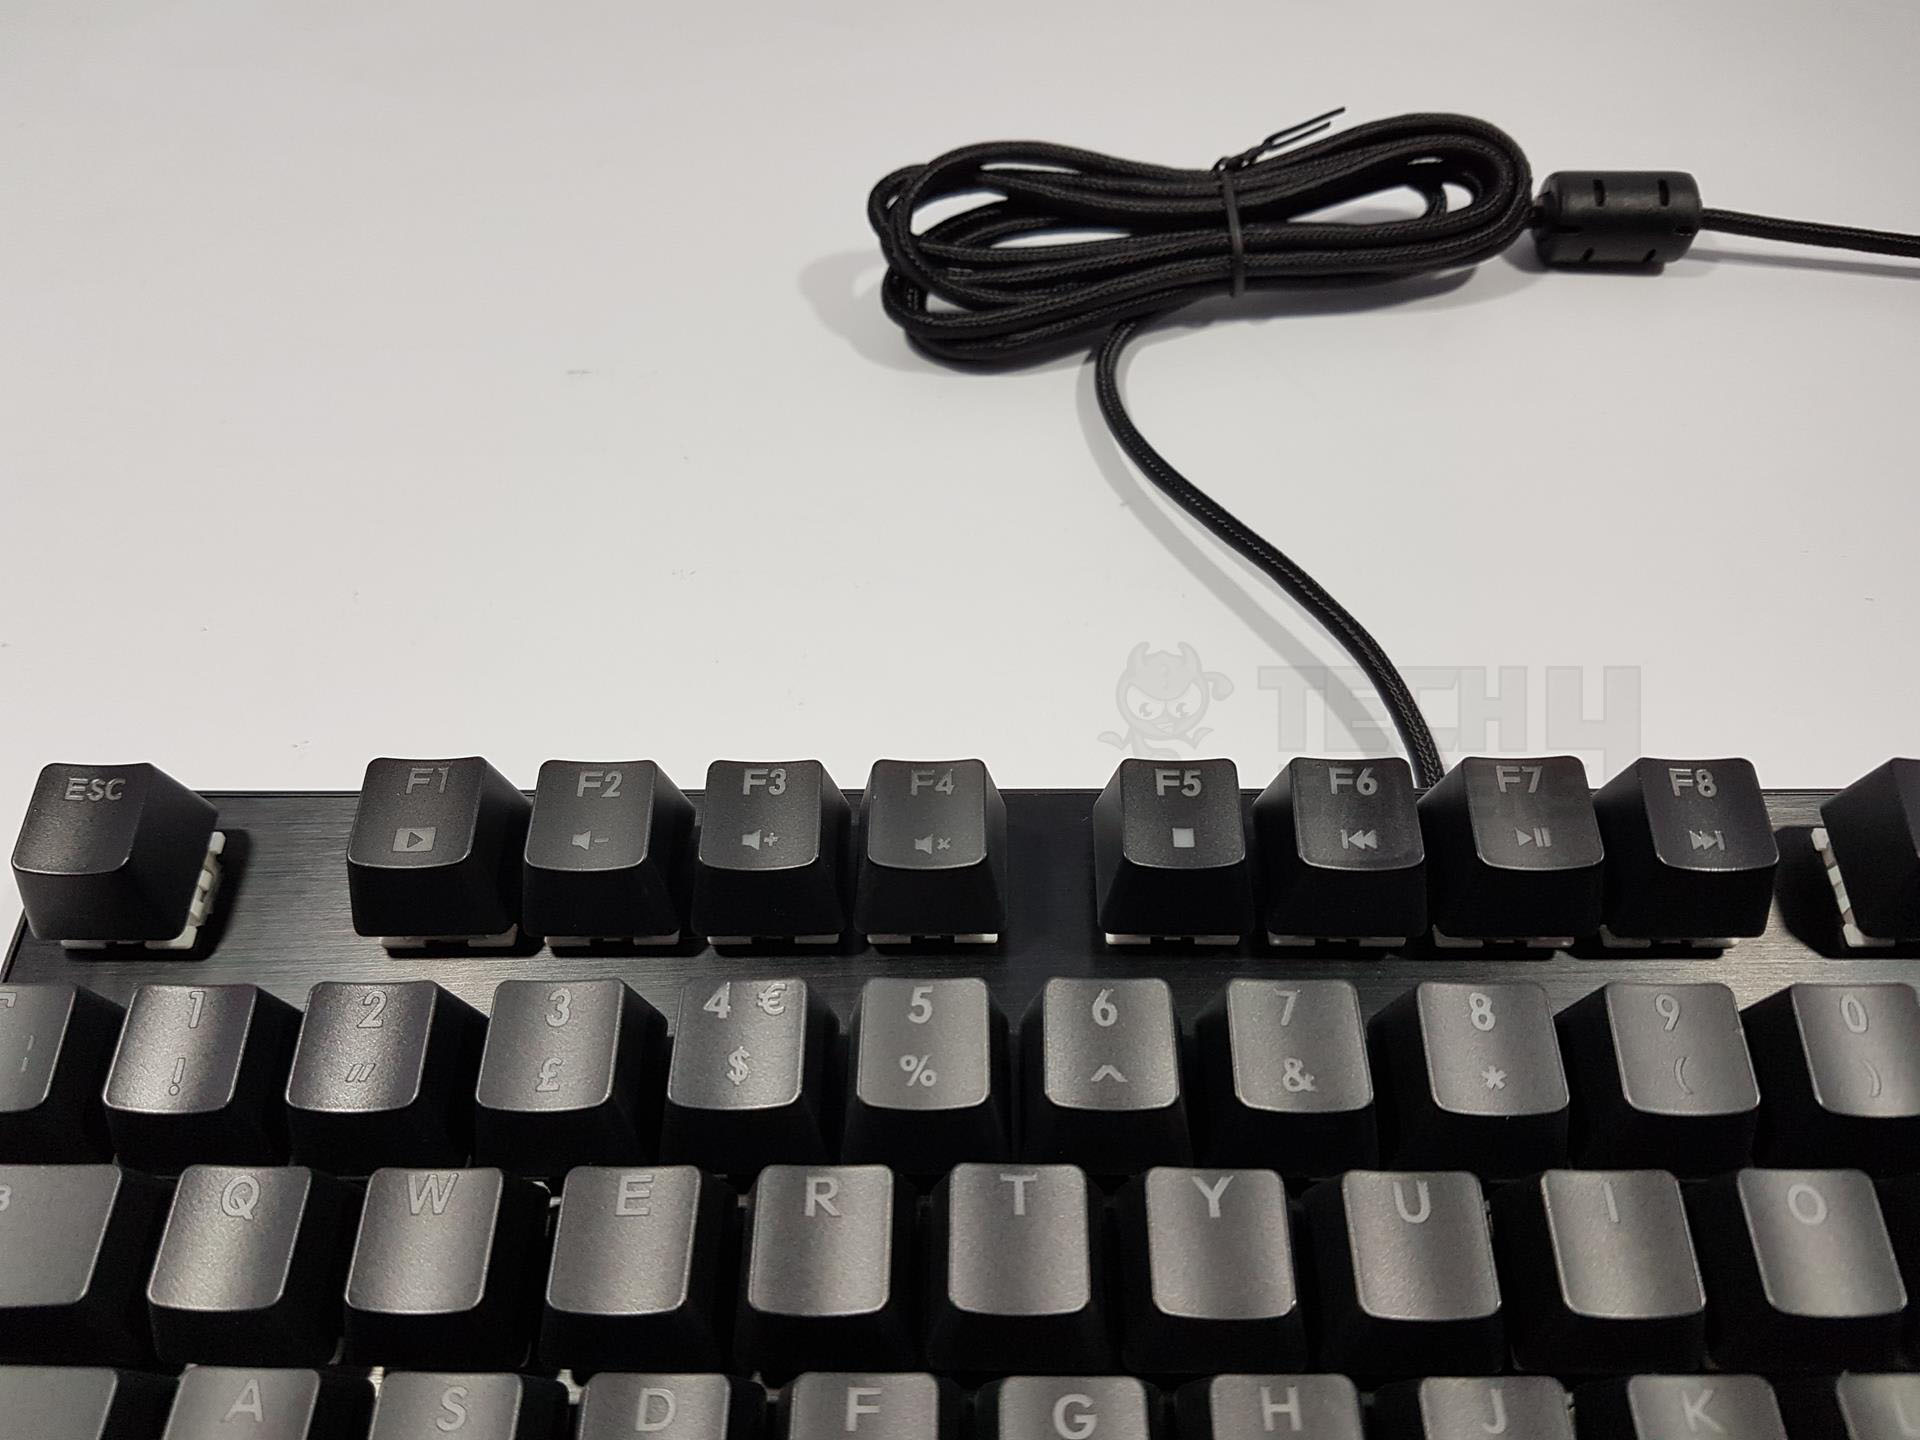 Drevo Tyrfing V2 Tenkeyless Mechanical Gaming Keyboard Review